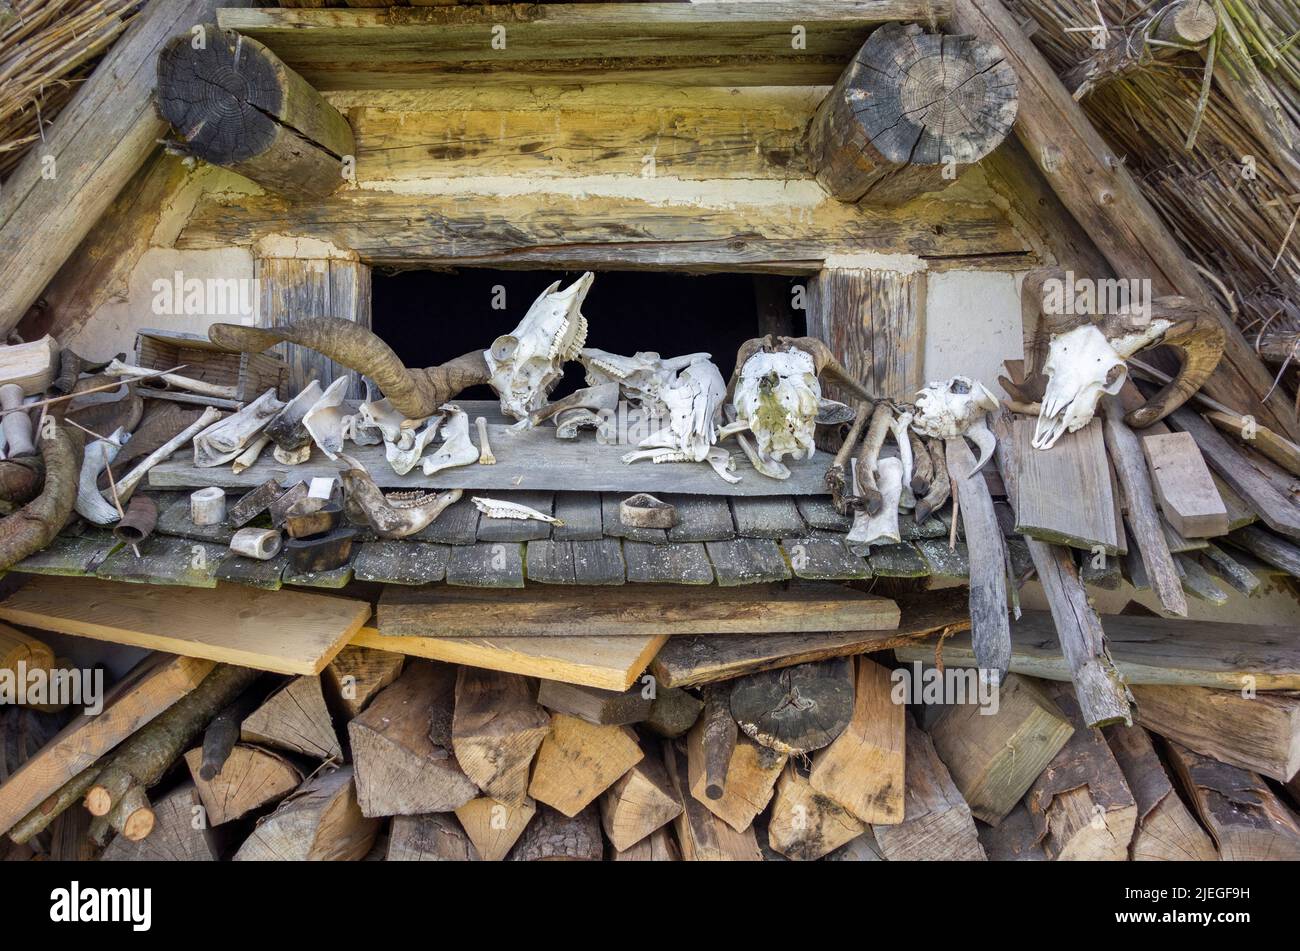 Paisaje arcaico incluyendo algunos cráneos animales y huesos Foto de stock